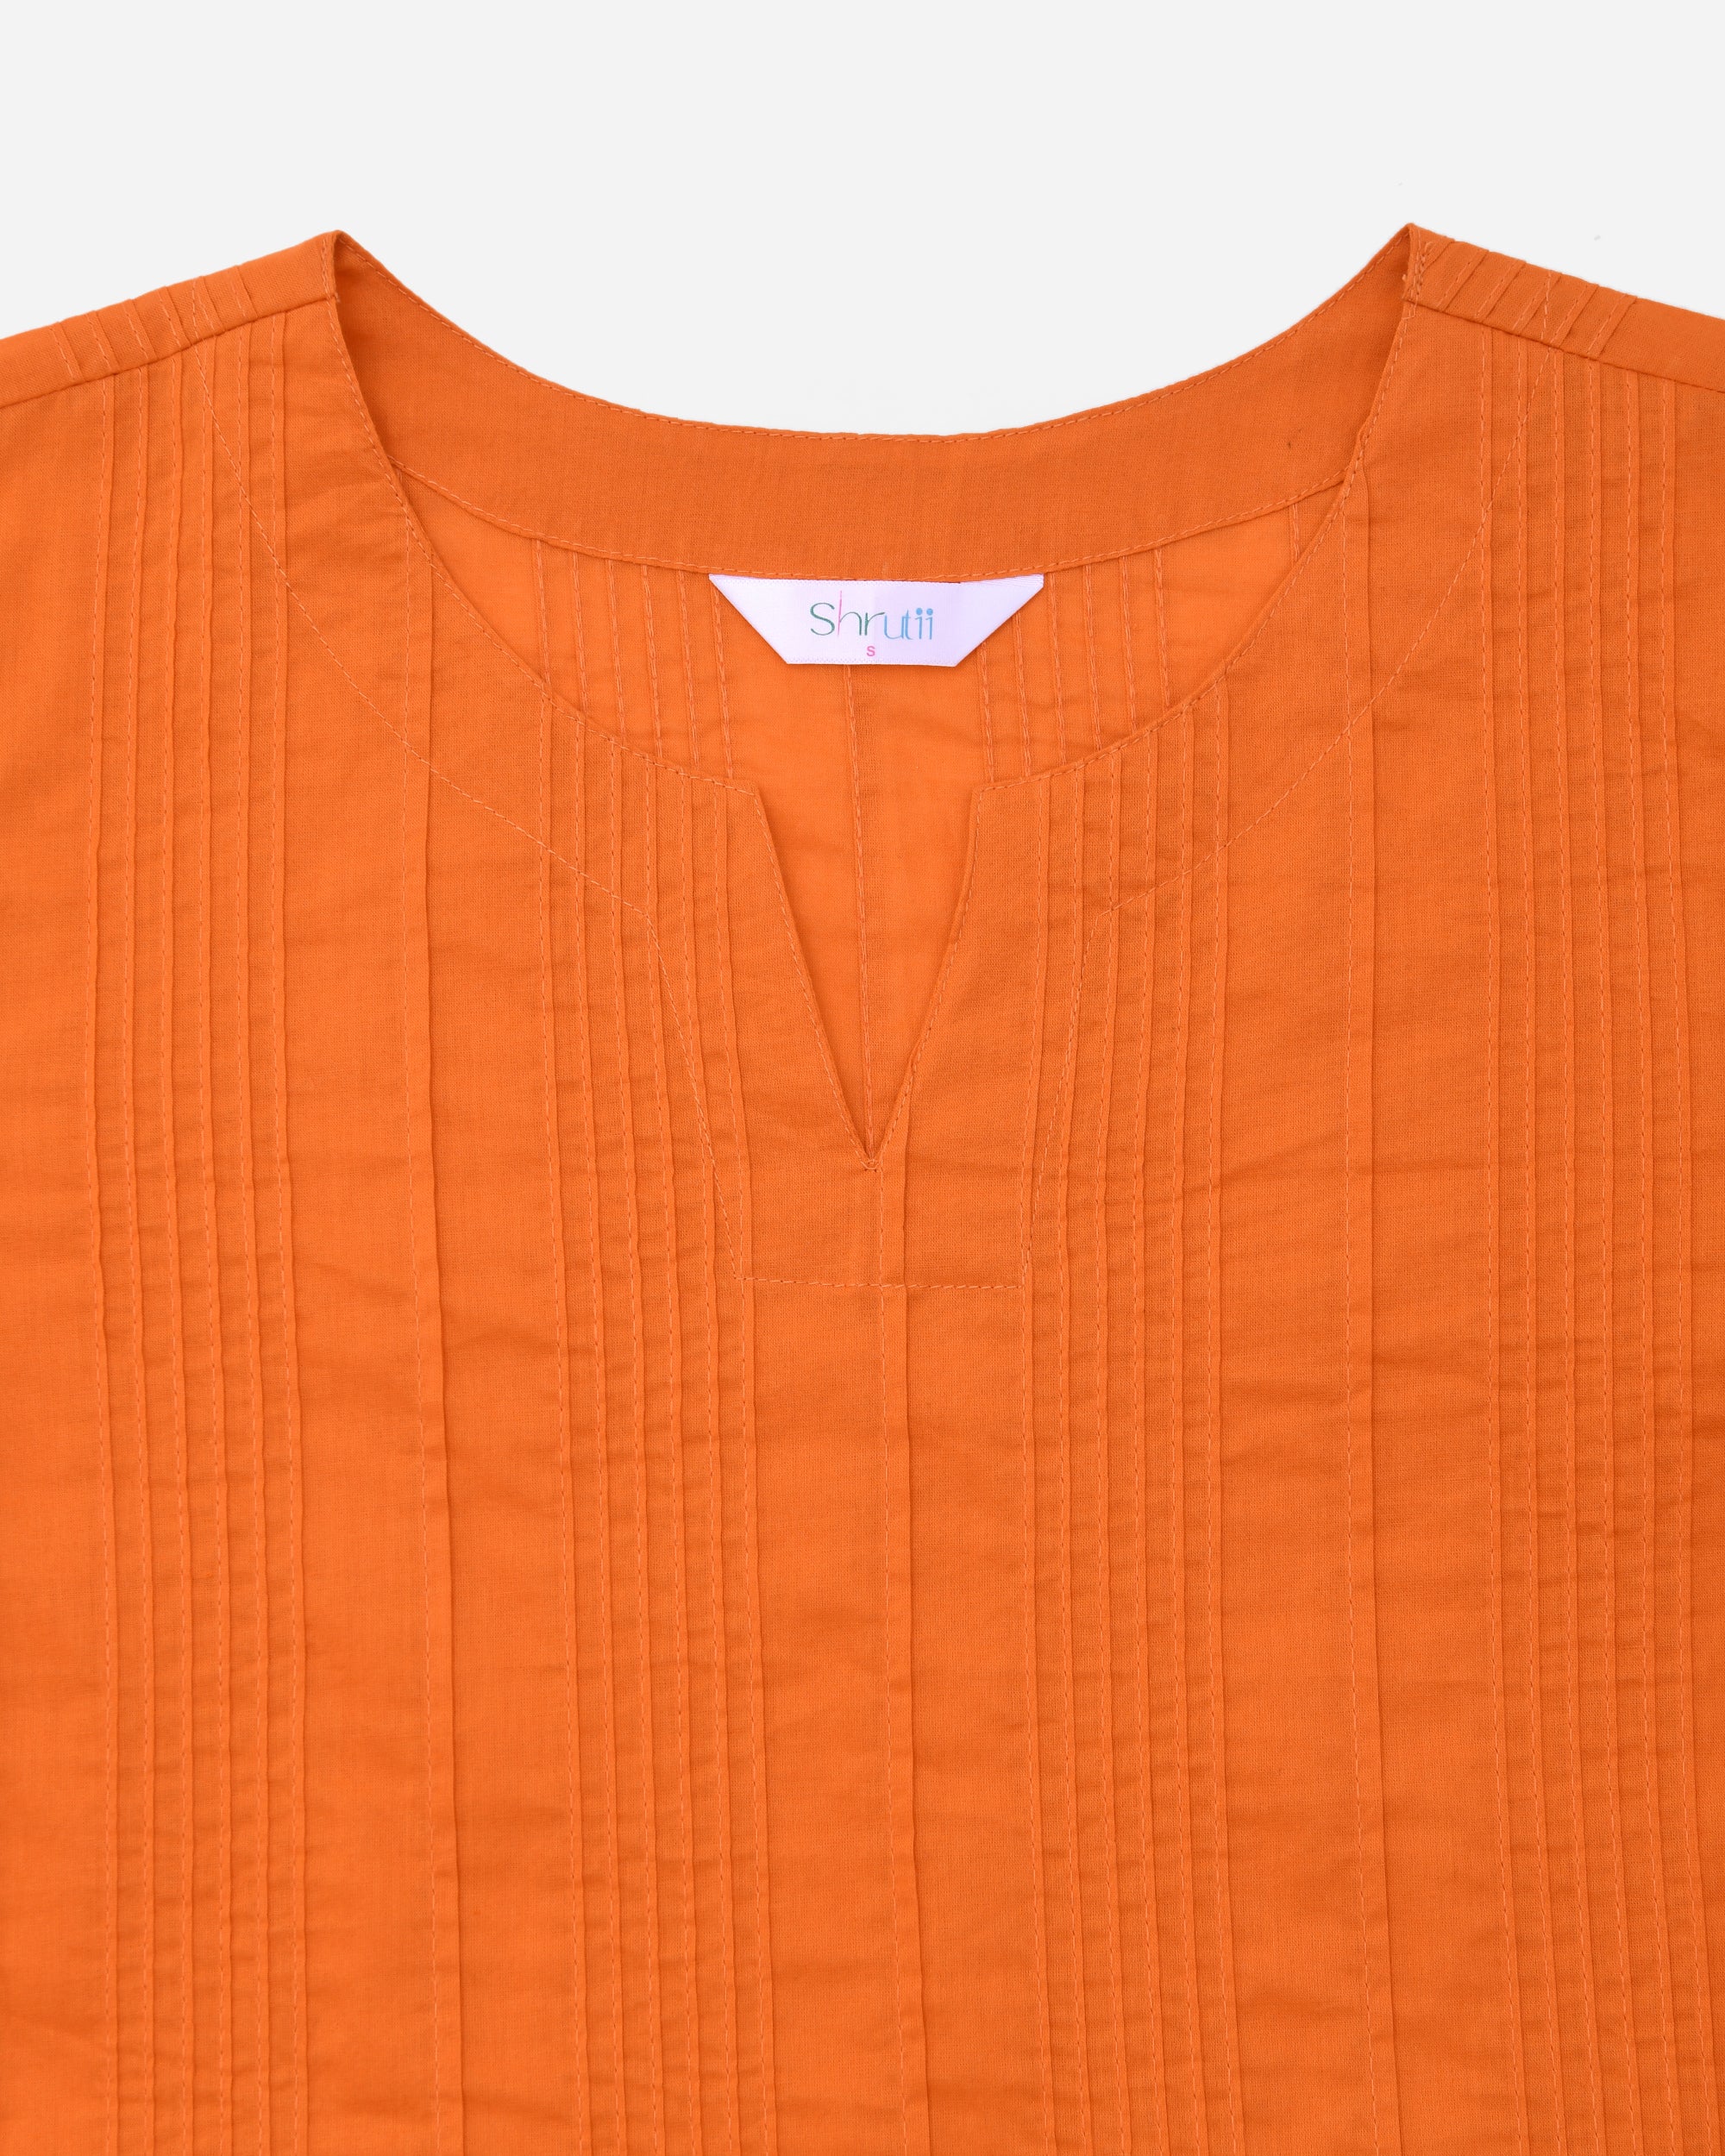 Tangy Orange Everyday Cotton Top